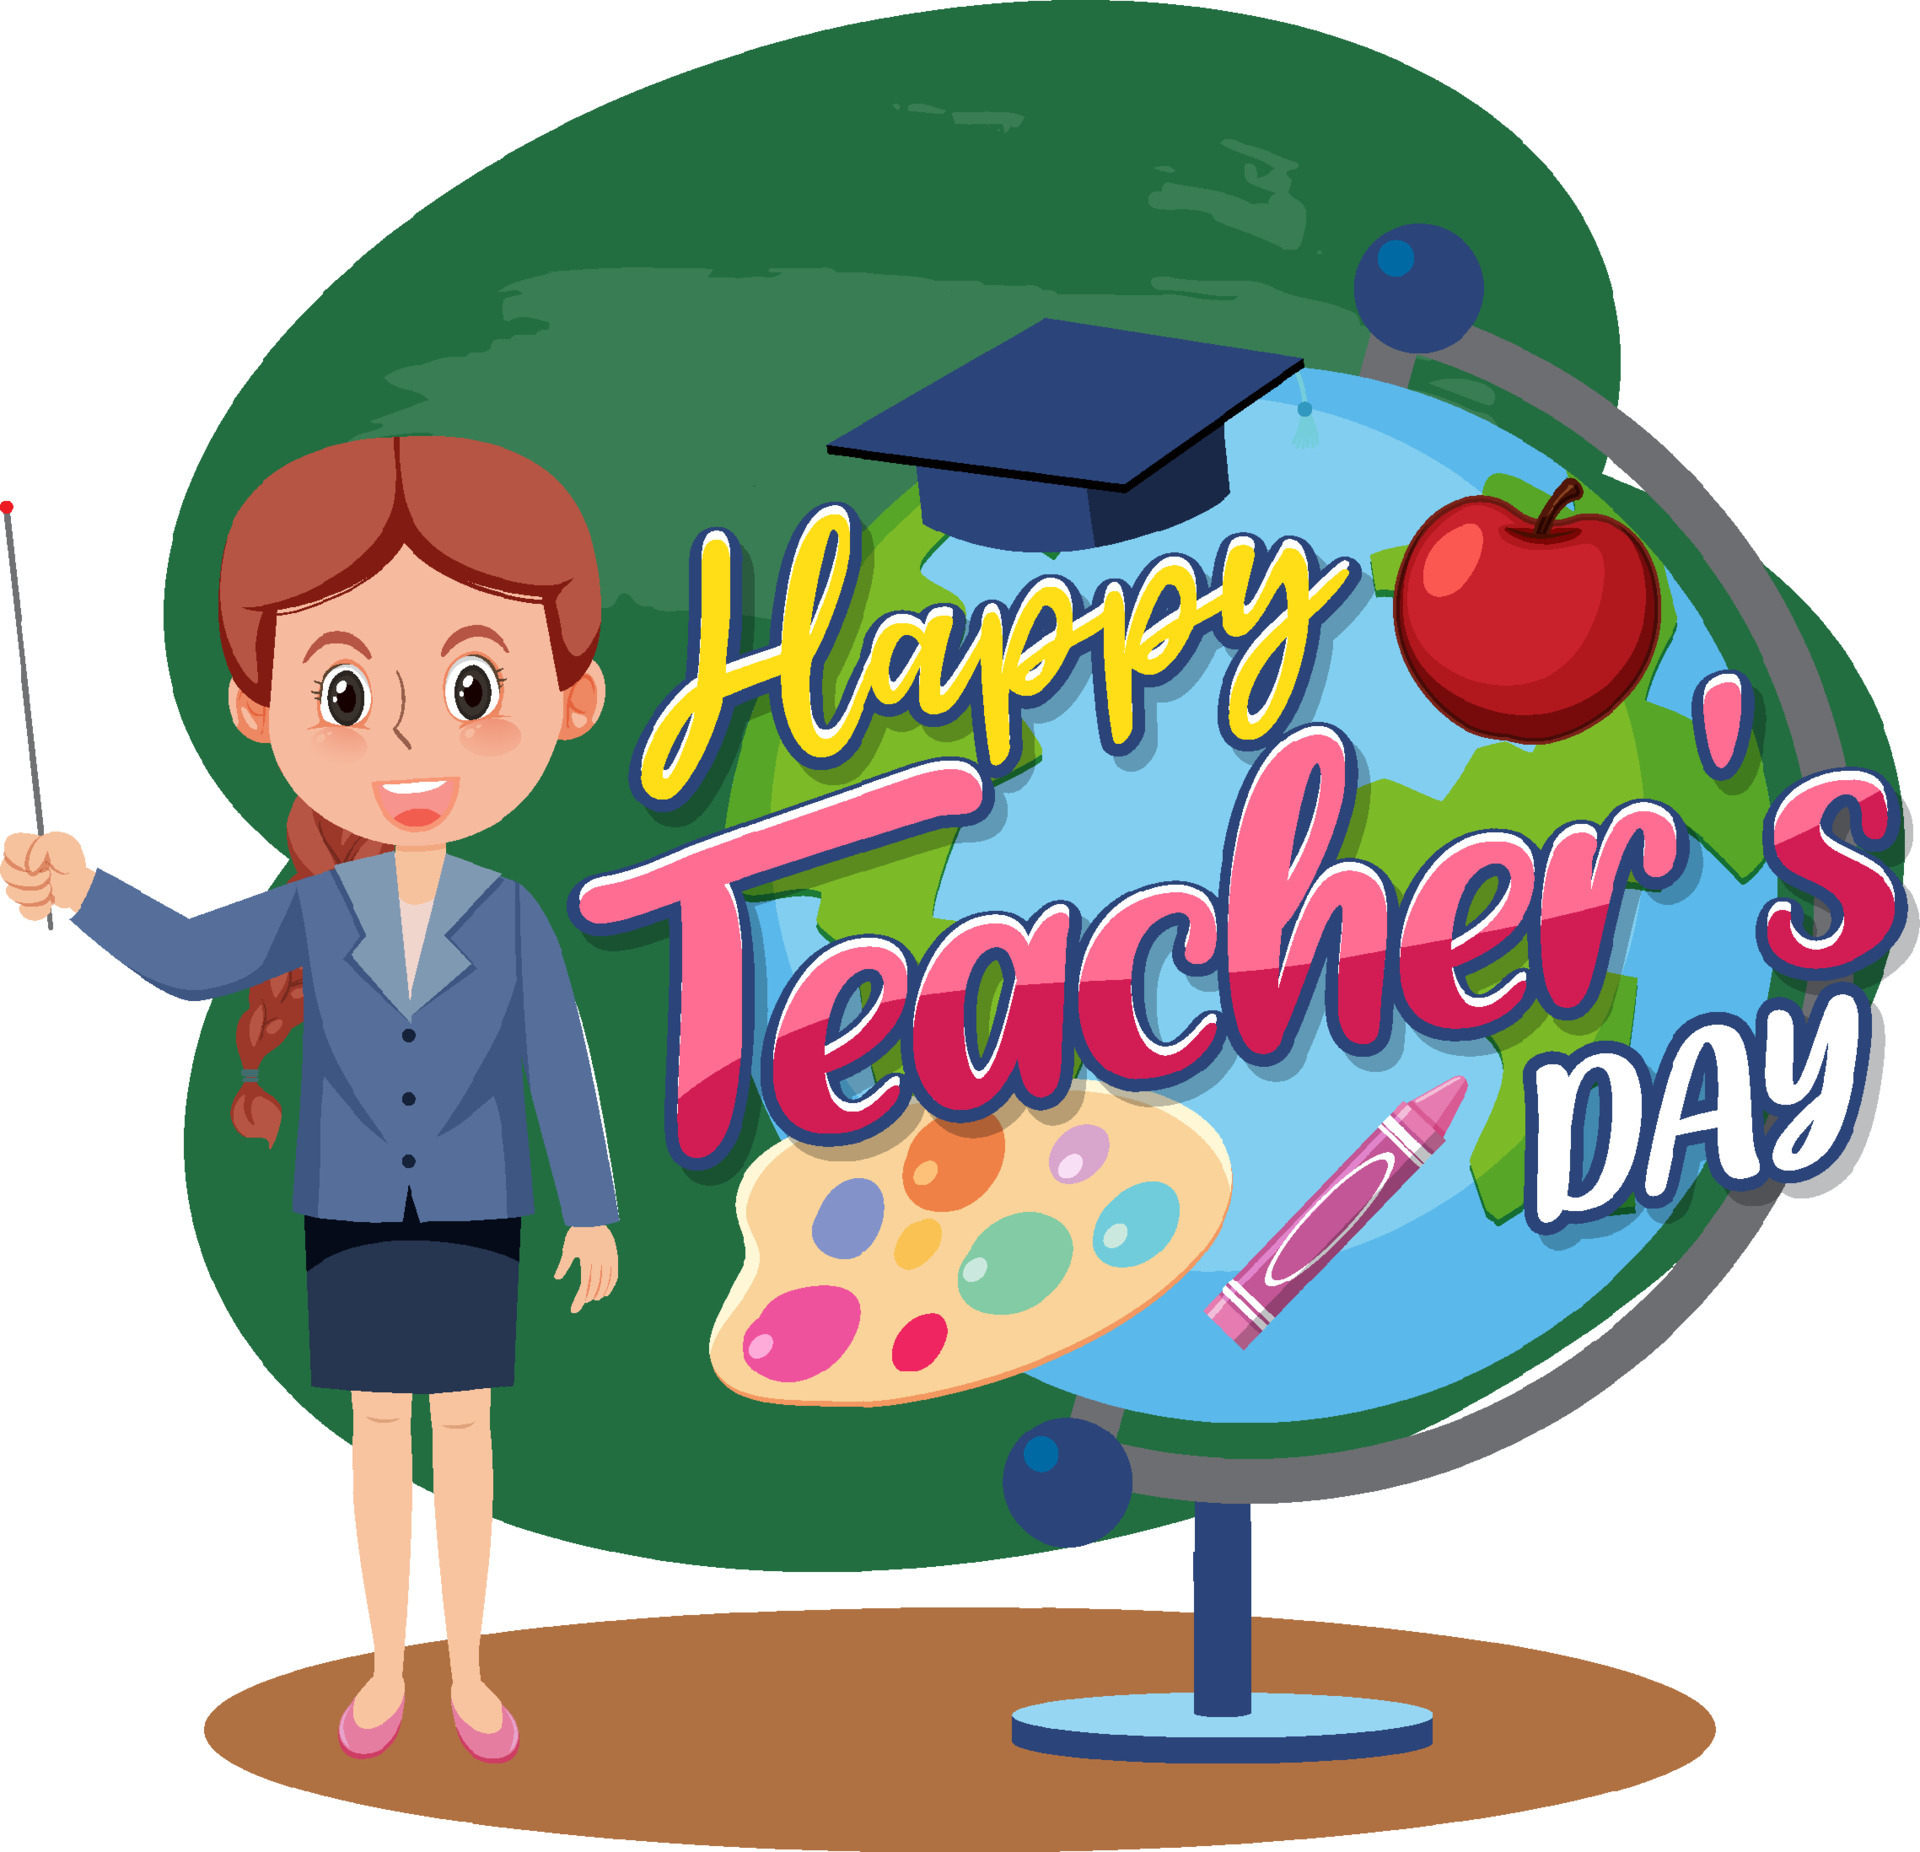 Happy Teacher's Day with a female teacher cartoon character 5457758 Vector  Art at Vecteezy